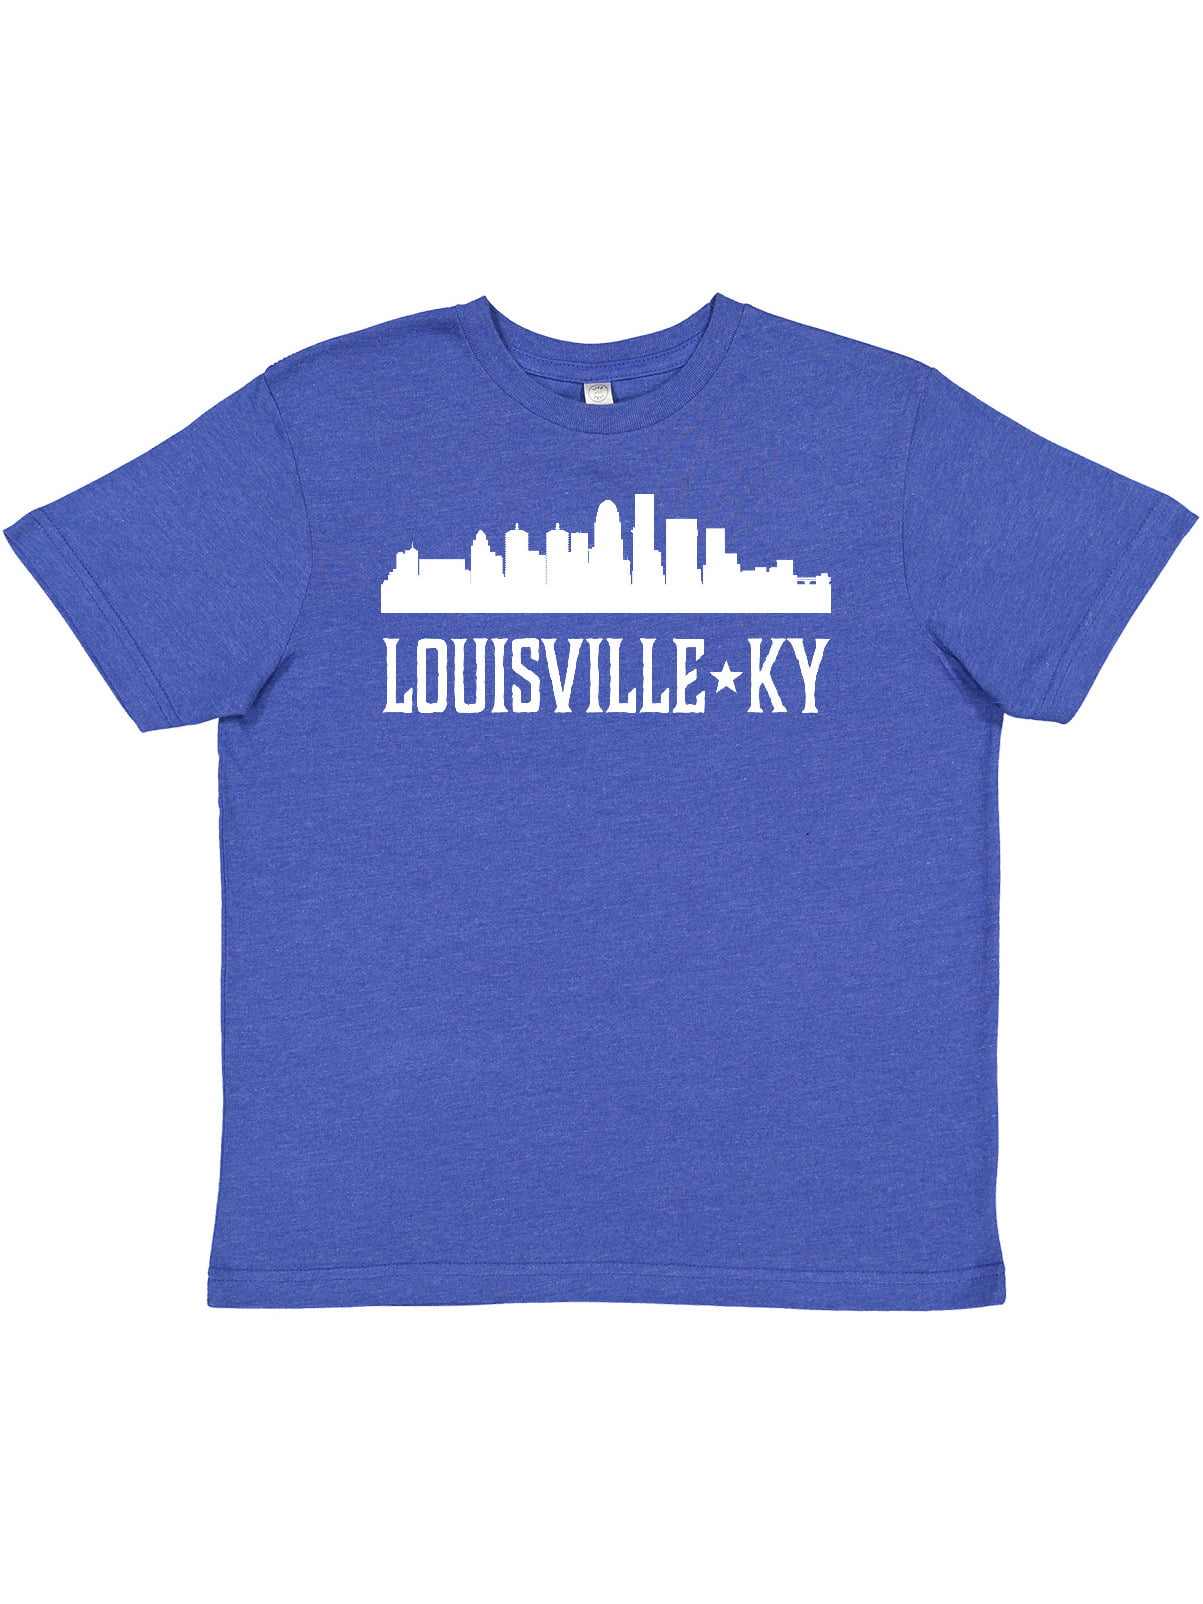 Louisville Kentucky Shirt Hometown Shirt KY Pride Shirt 